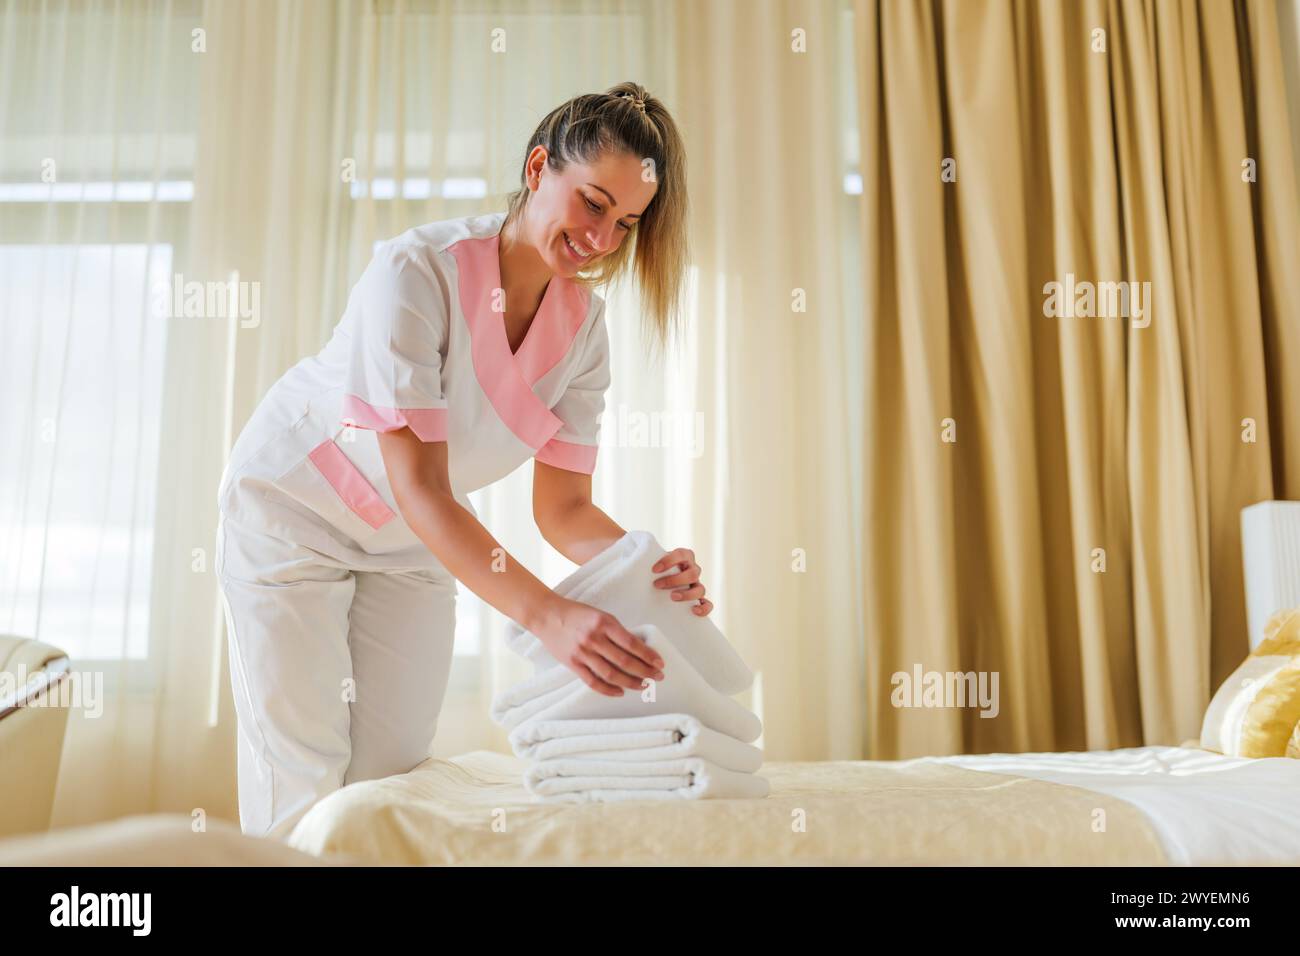 Belle femme de chambre mettant des serviettes propres et propres sur le lit de la chambre. Banque D'Images